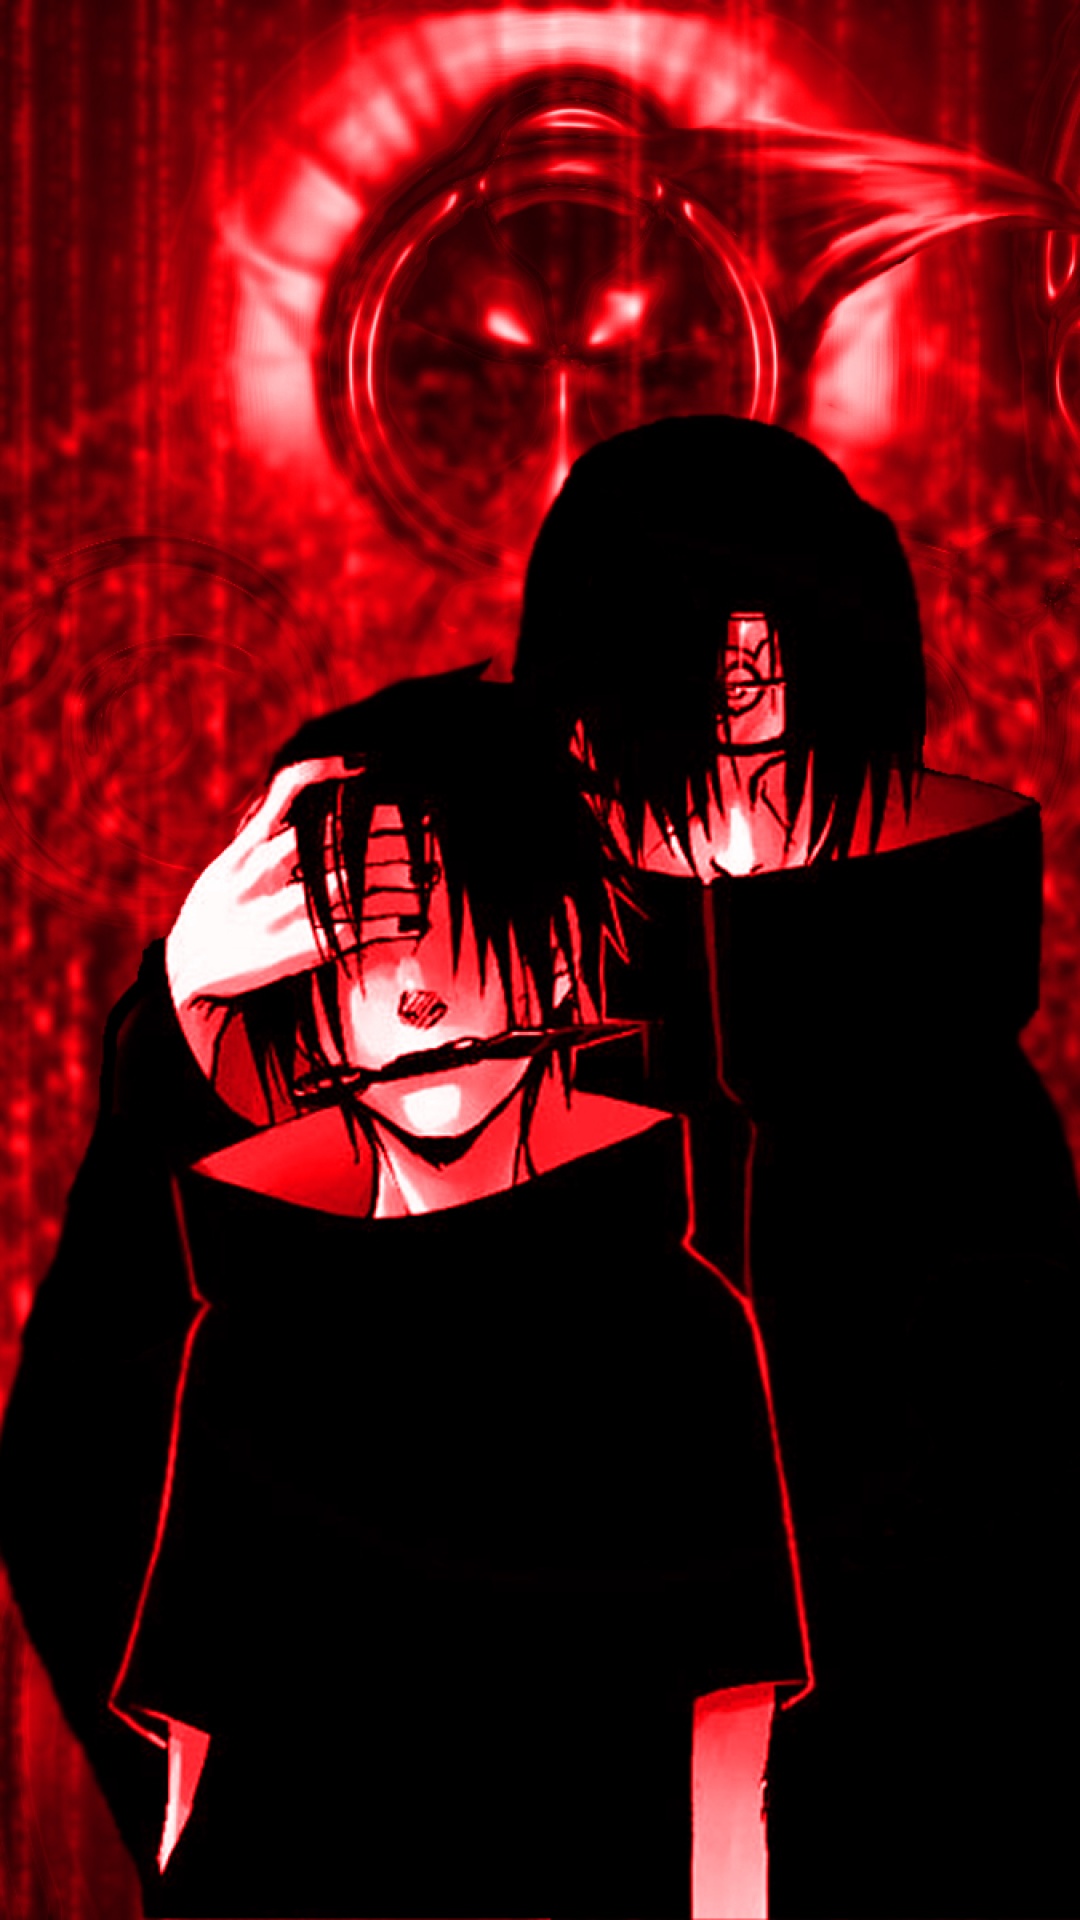 sasuke uchiha wallpaper iphone,rot,erfundener charakter,illustration,superschurke,kunst